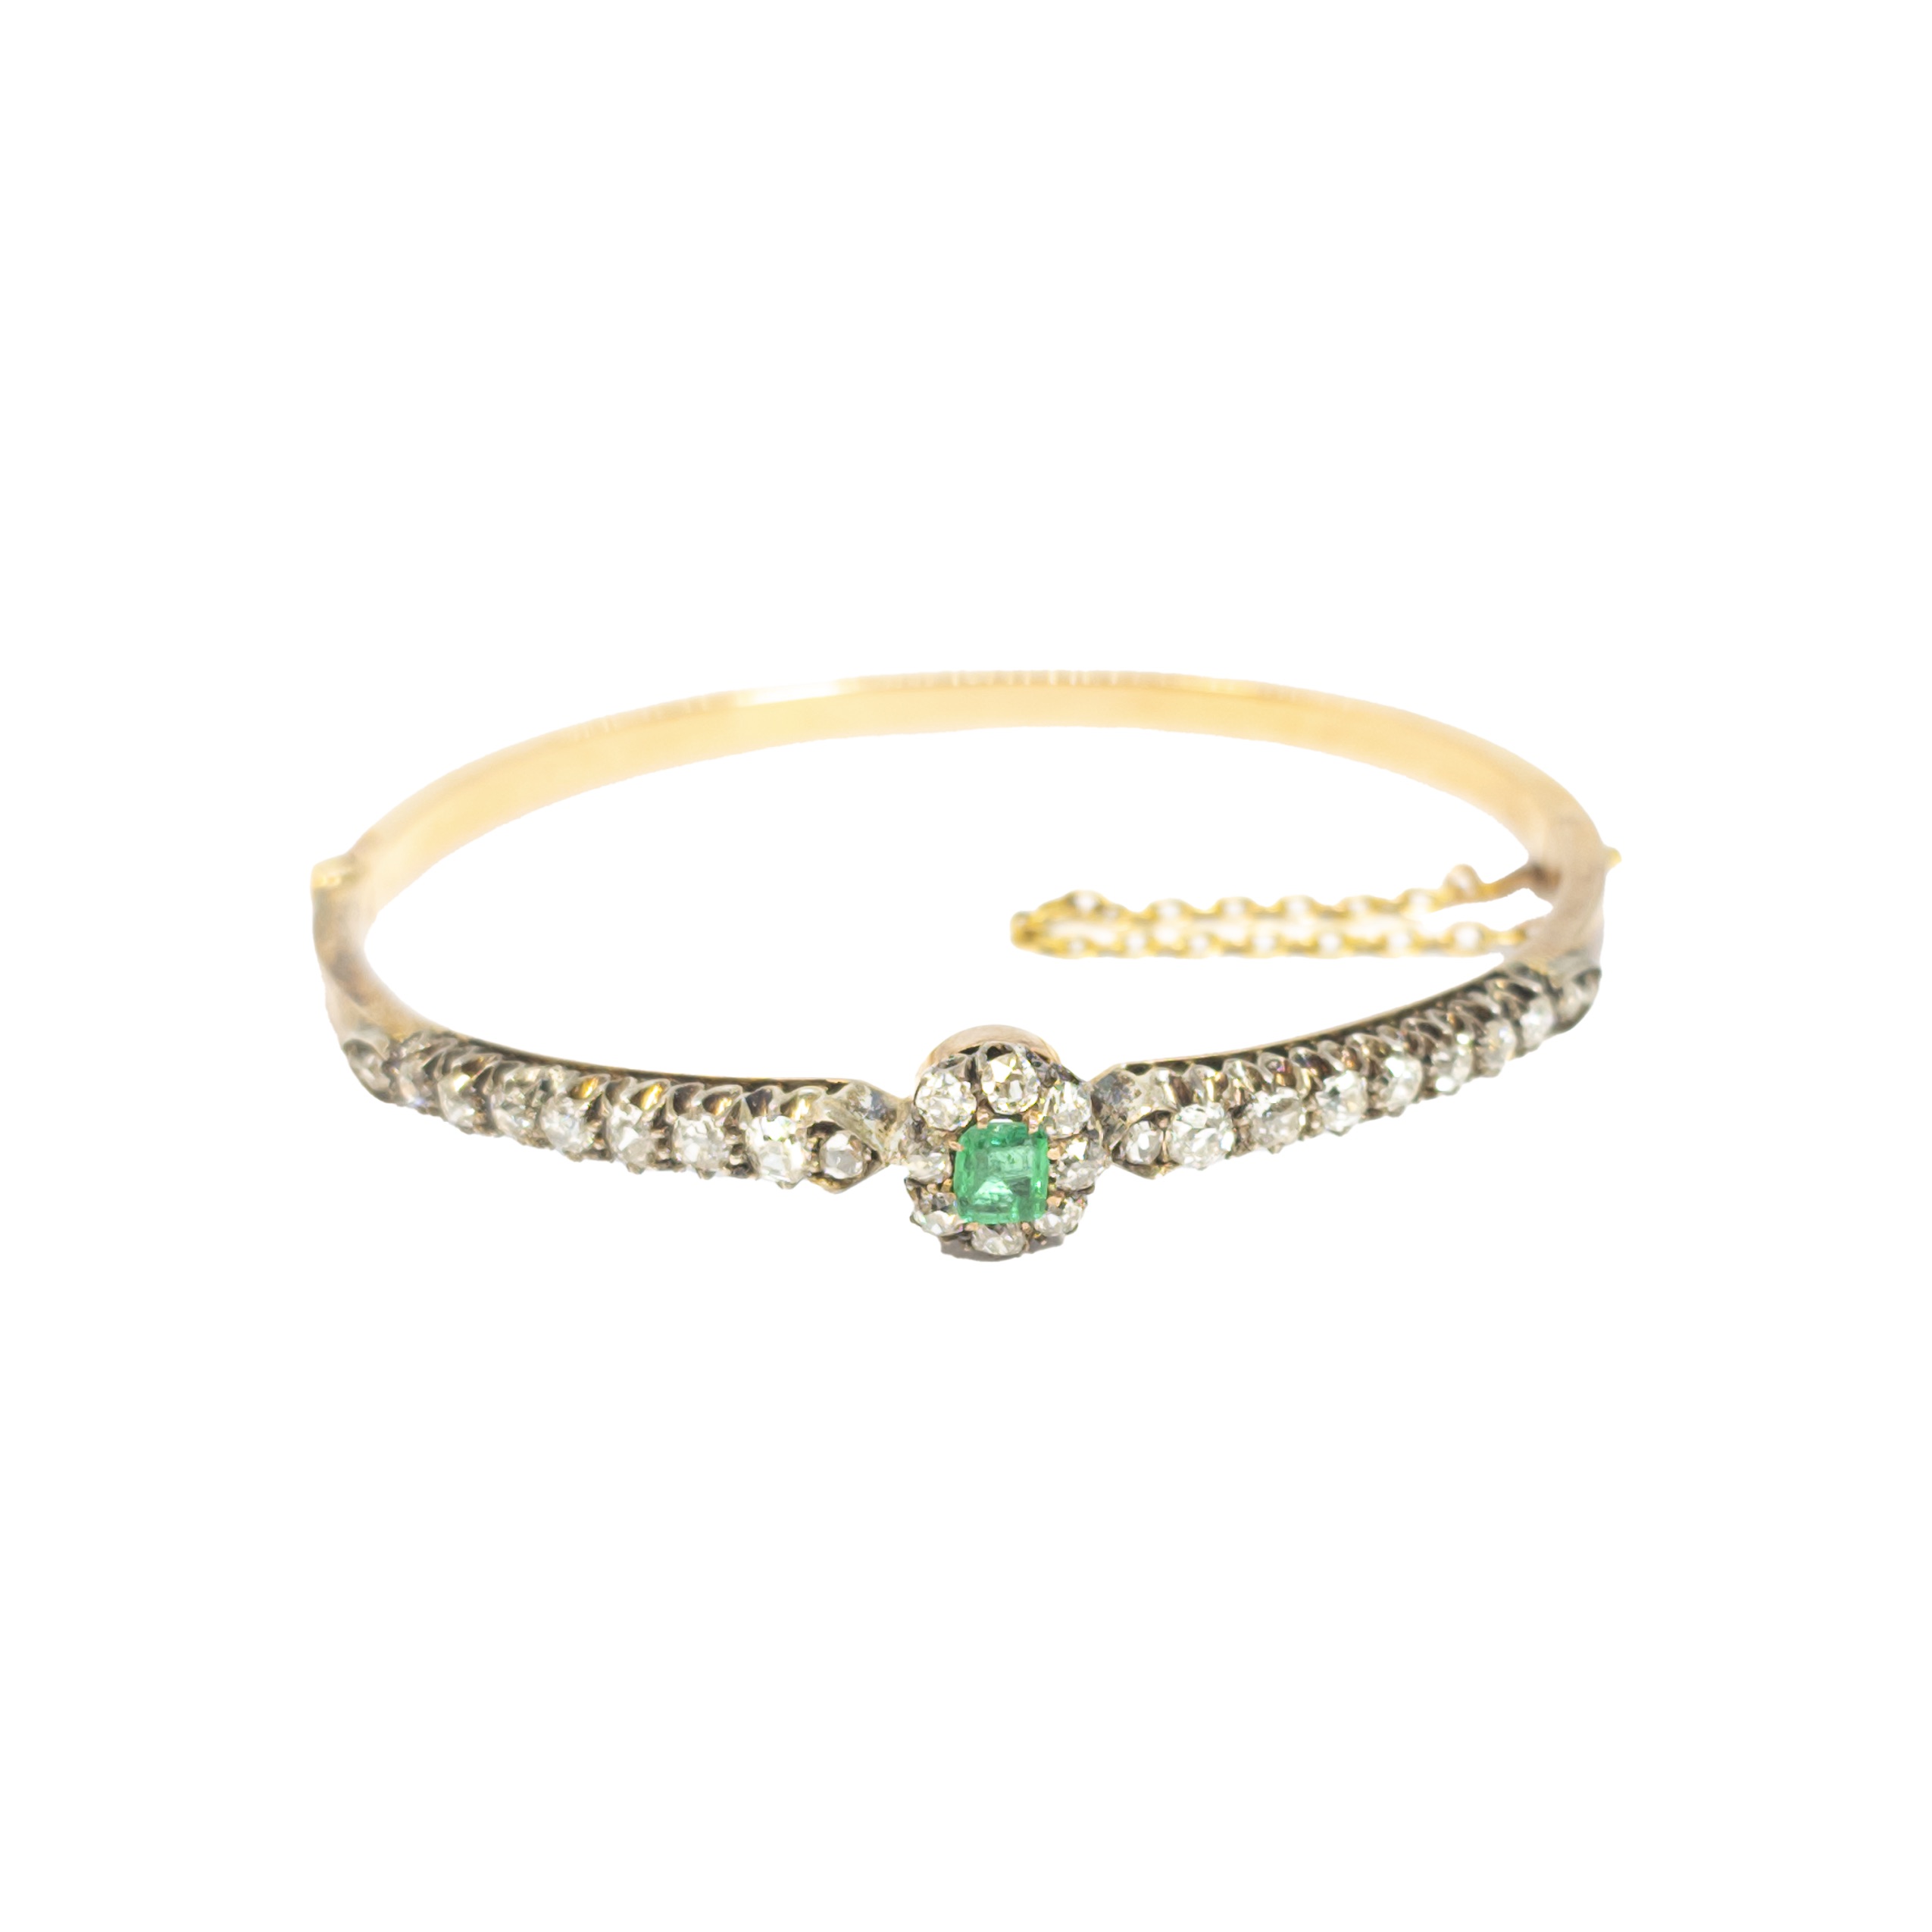 British, Circa 1880, A pretty emerald, diamond and 18 carat rose gold bangle